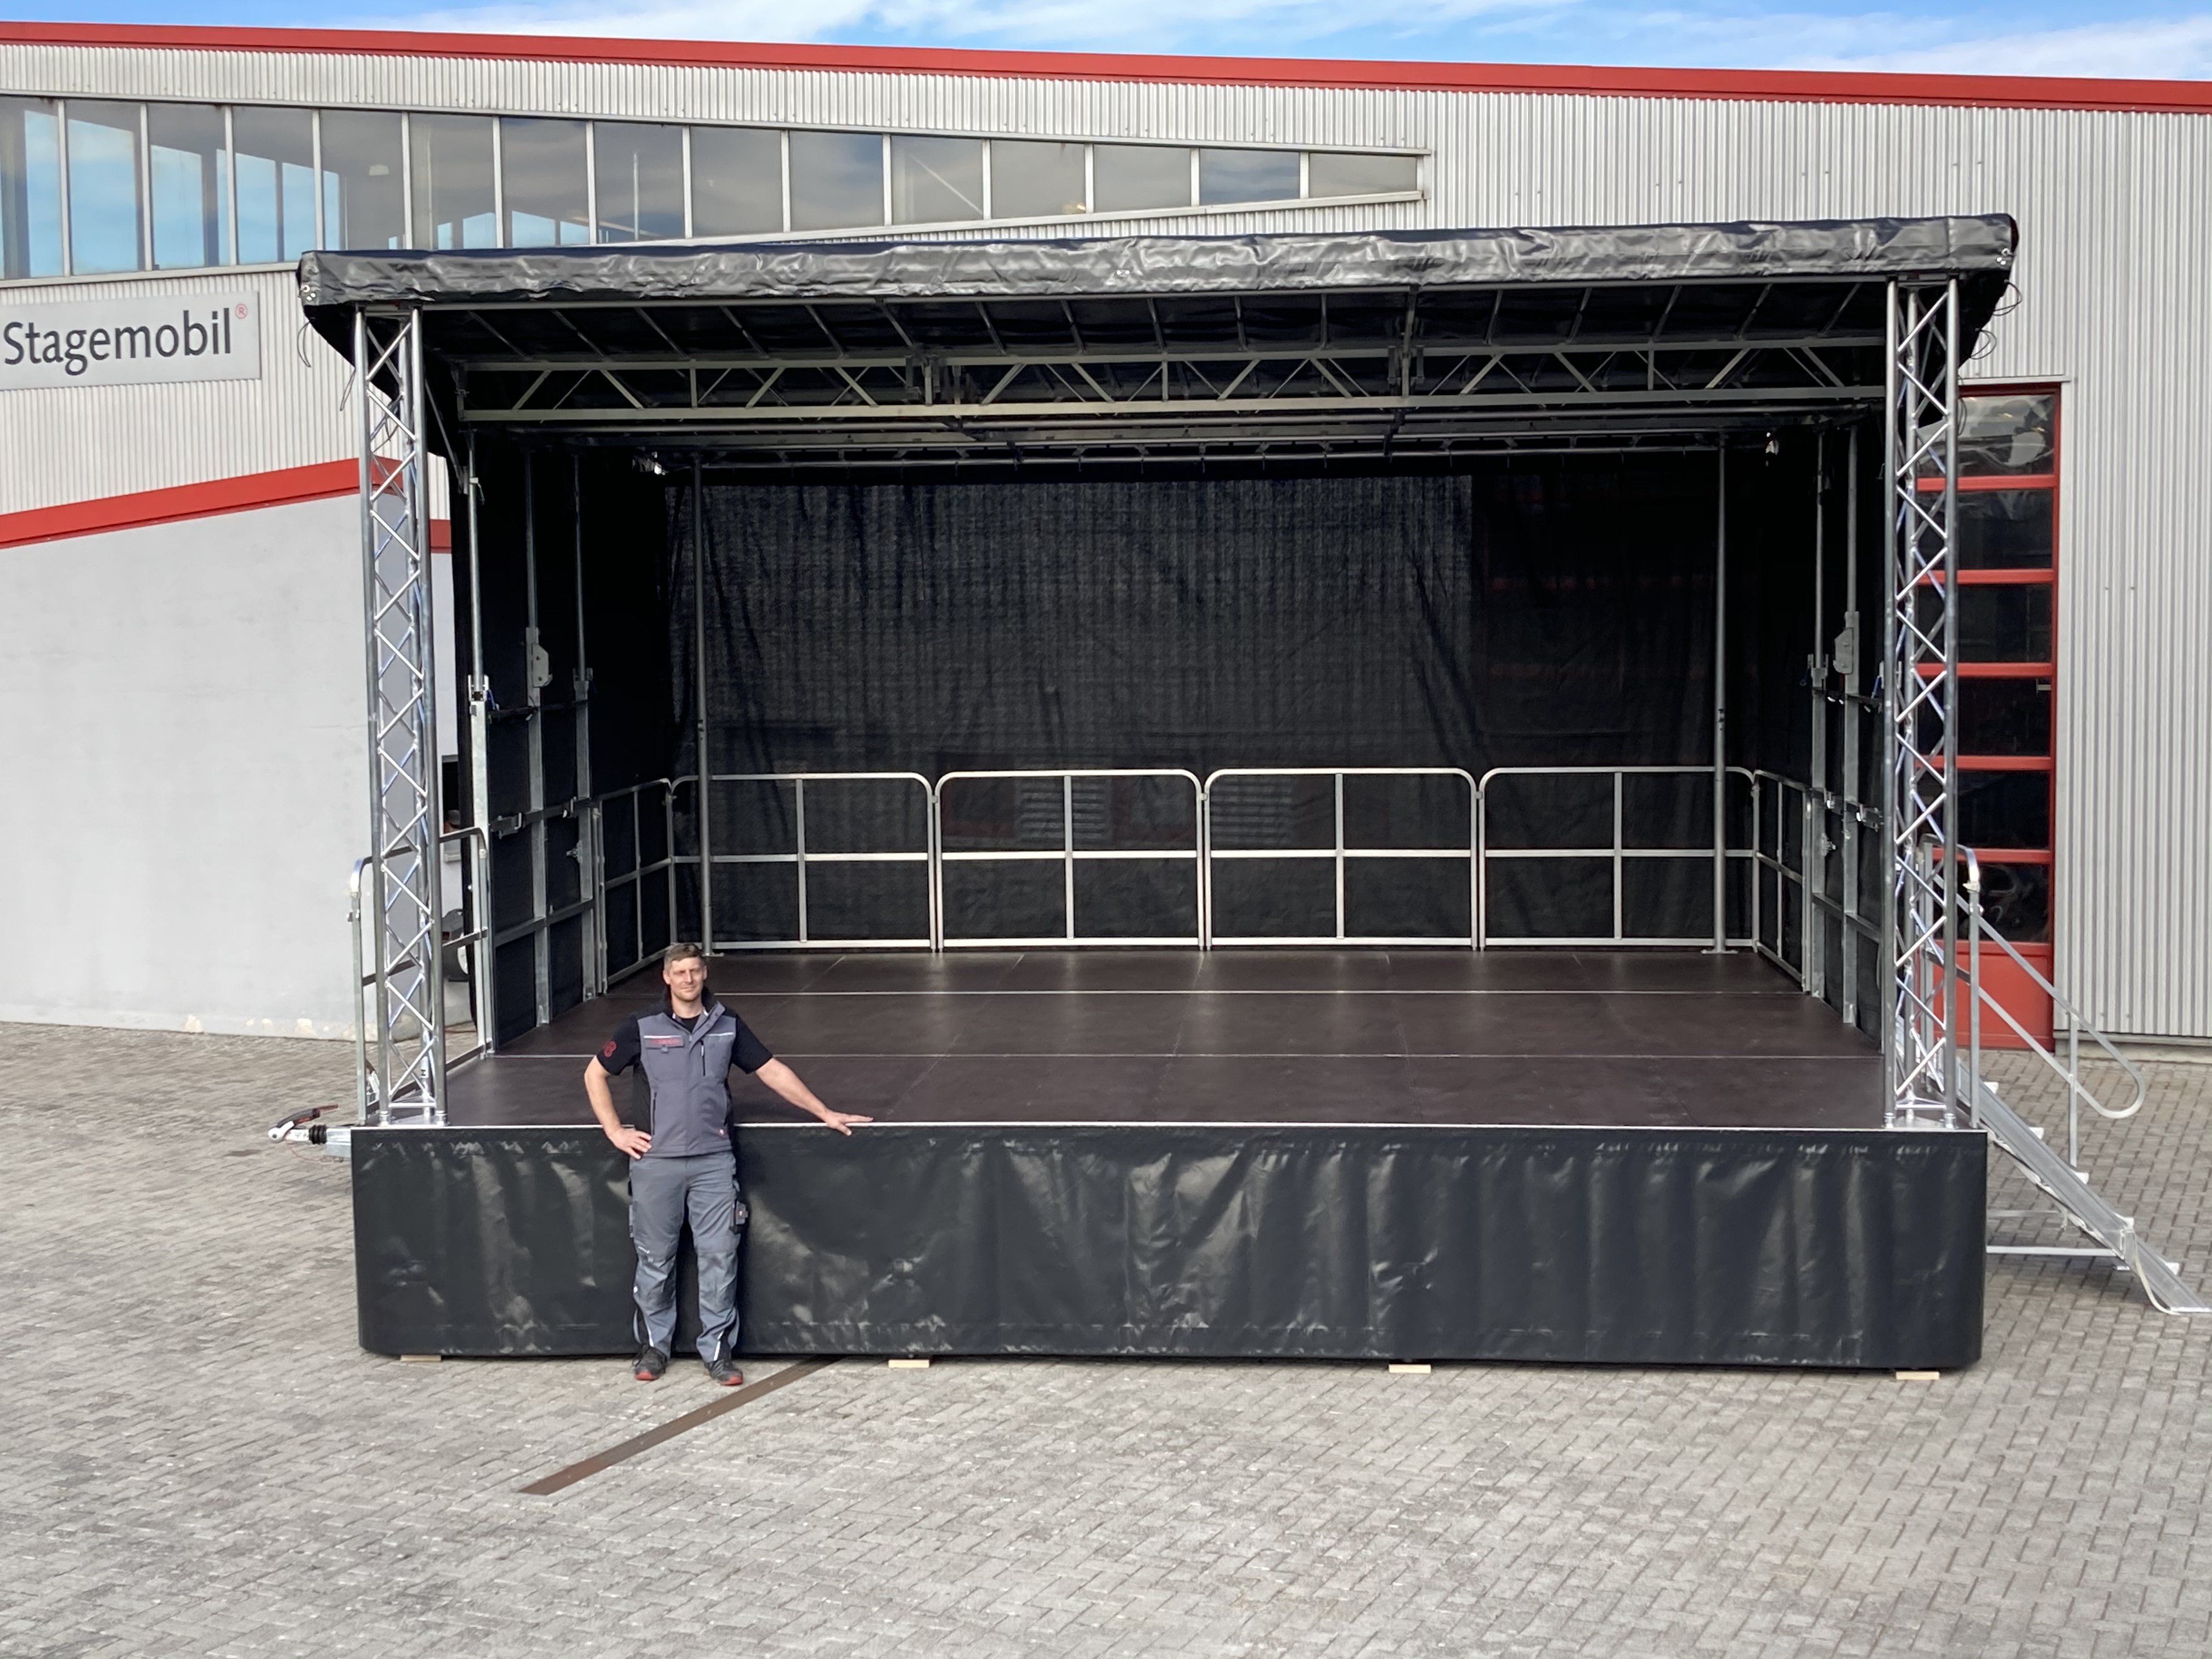 Im Vordergrund befindet sich ein mobiler Bühnenanhänger. Davor steht eine männliche Person, dessen linke Hand sich auf dem Bühnenpodest befindet. 